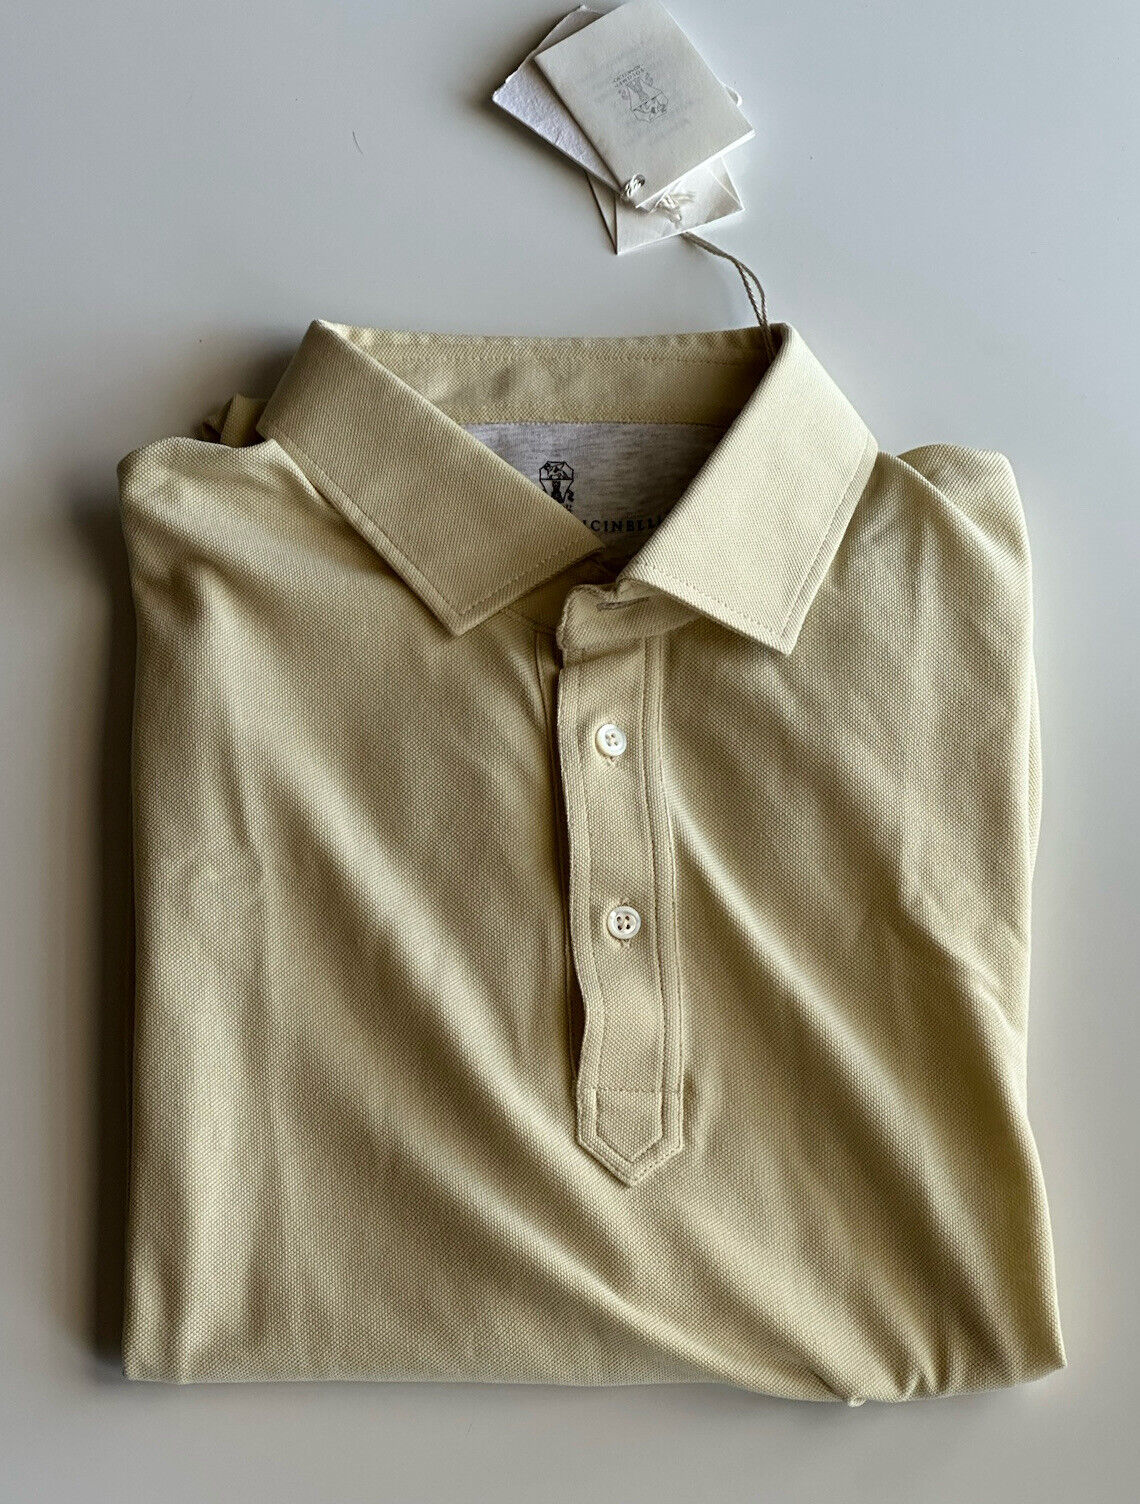 Neu mit Etikett: 495 $ Brunello Cuccinelli Basic Pique Poloshirt Gelb 42 US (54 Euro) Italien